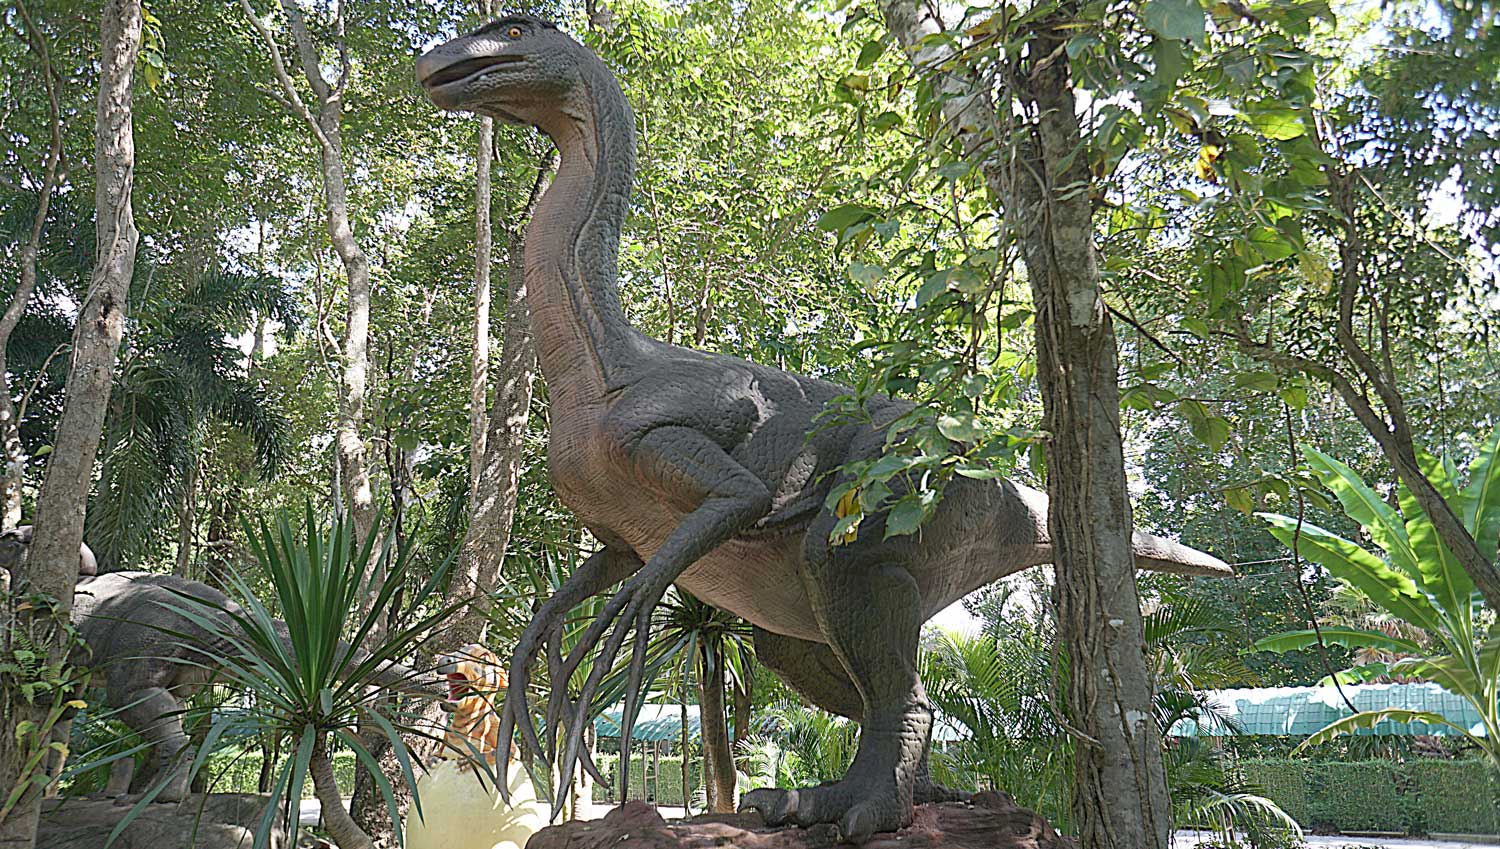 Dino Park Nong Bua Lamphu